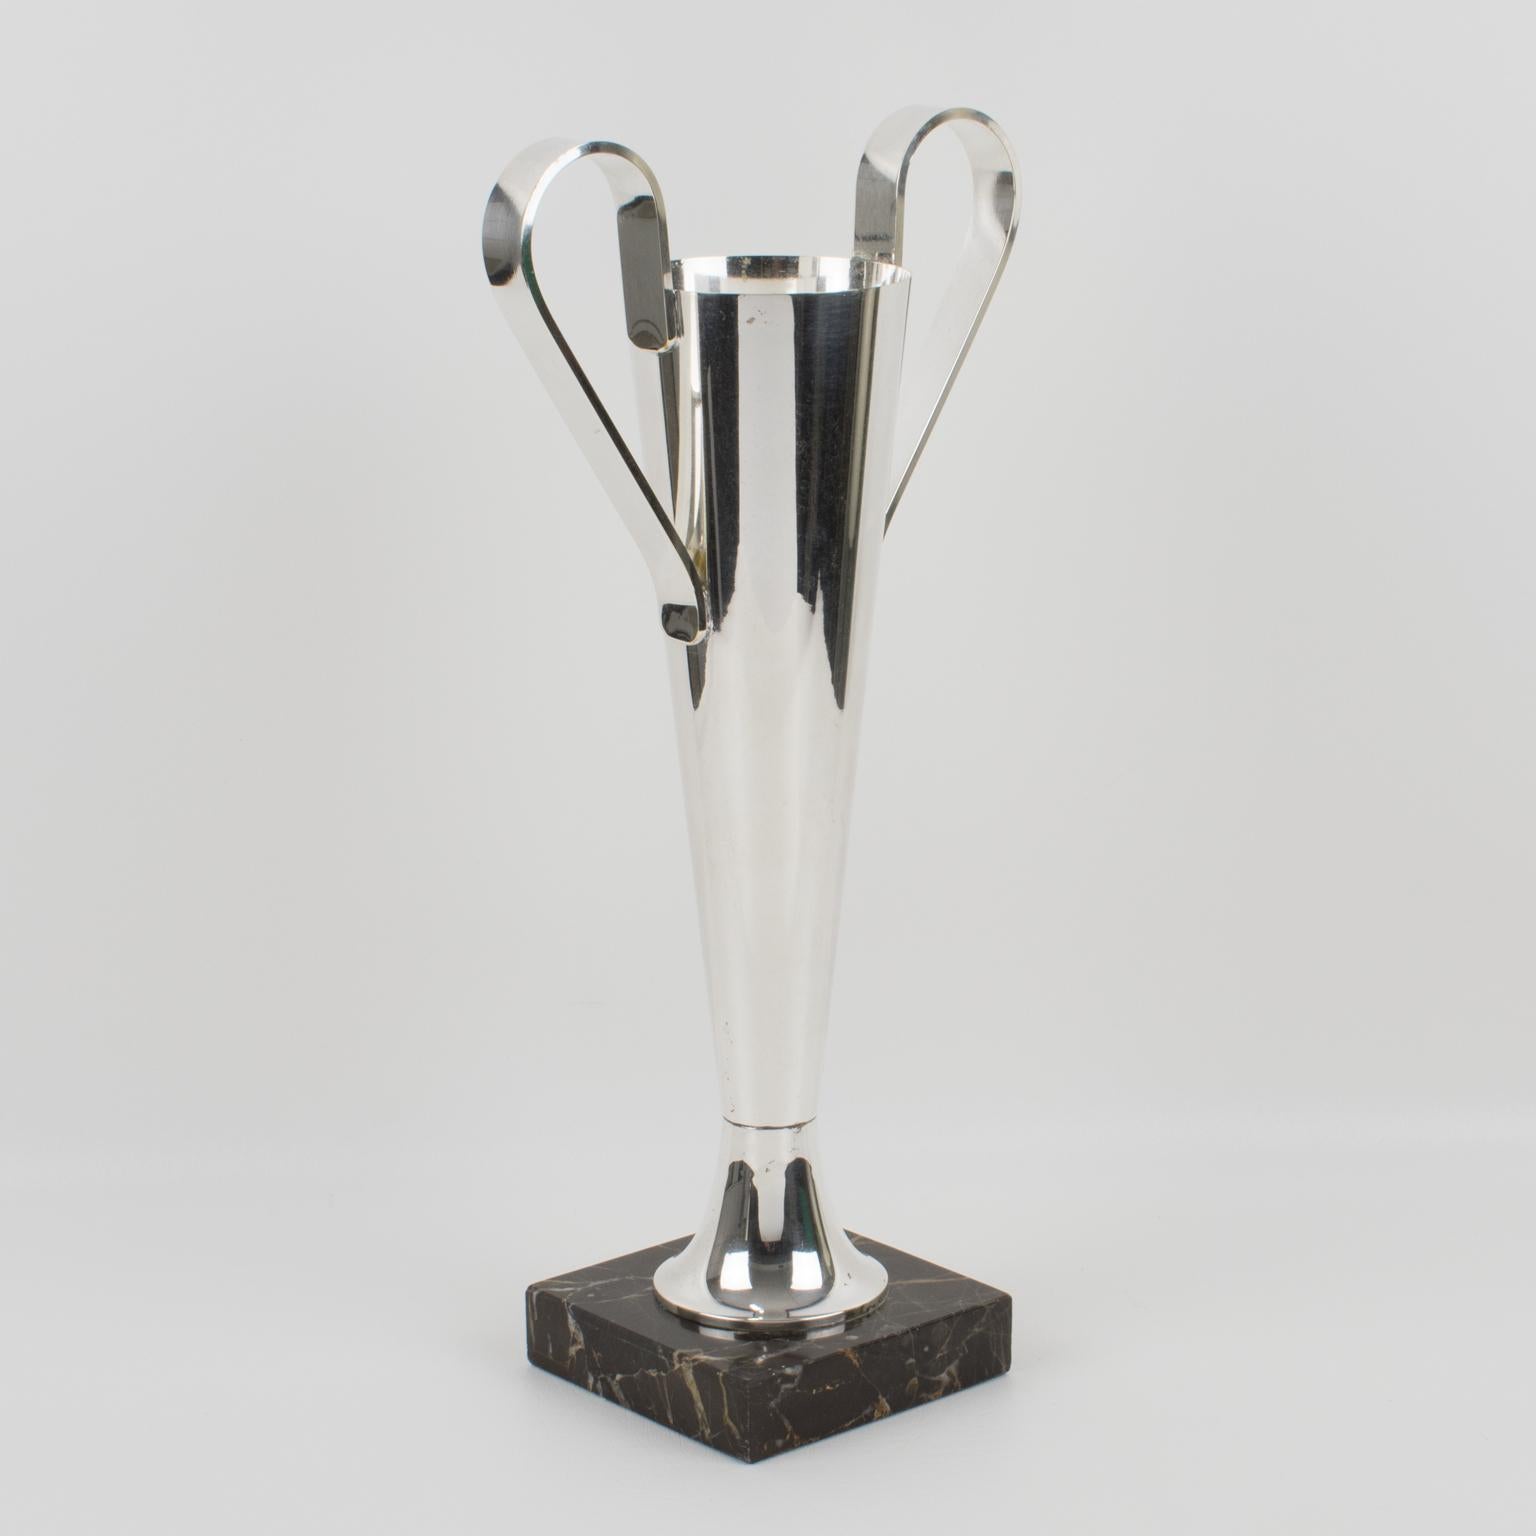 Eine elegante französische Vase aus hohem Silberblech im Art-Déco-Stil mit breiten Henkeln auf einem Marmorsockel. Diese Vase könnte eine Trophäe sein. Dieses Gefäß hat eine stromlinienförmige Tulpenform, die mit robusten Griffen verziert ist, und